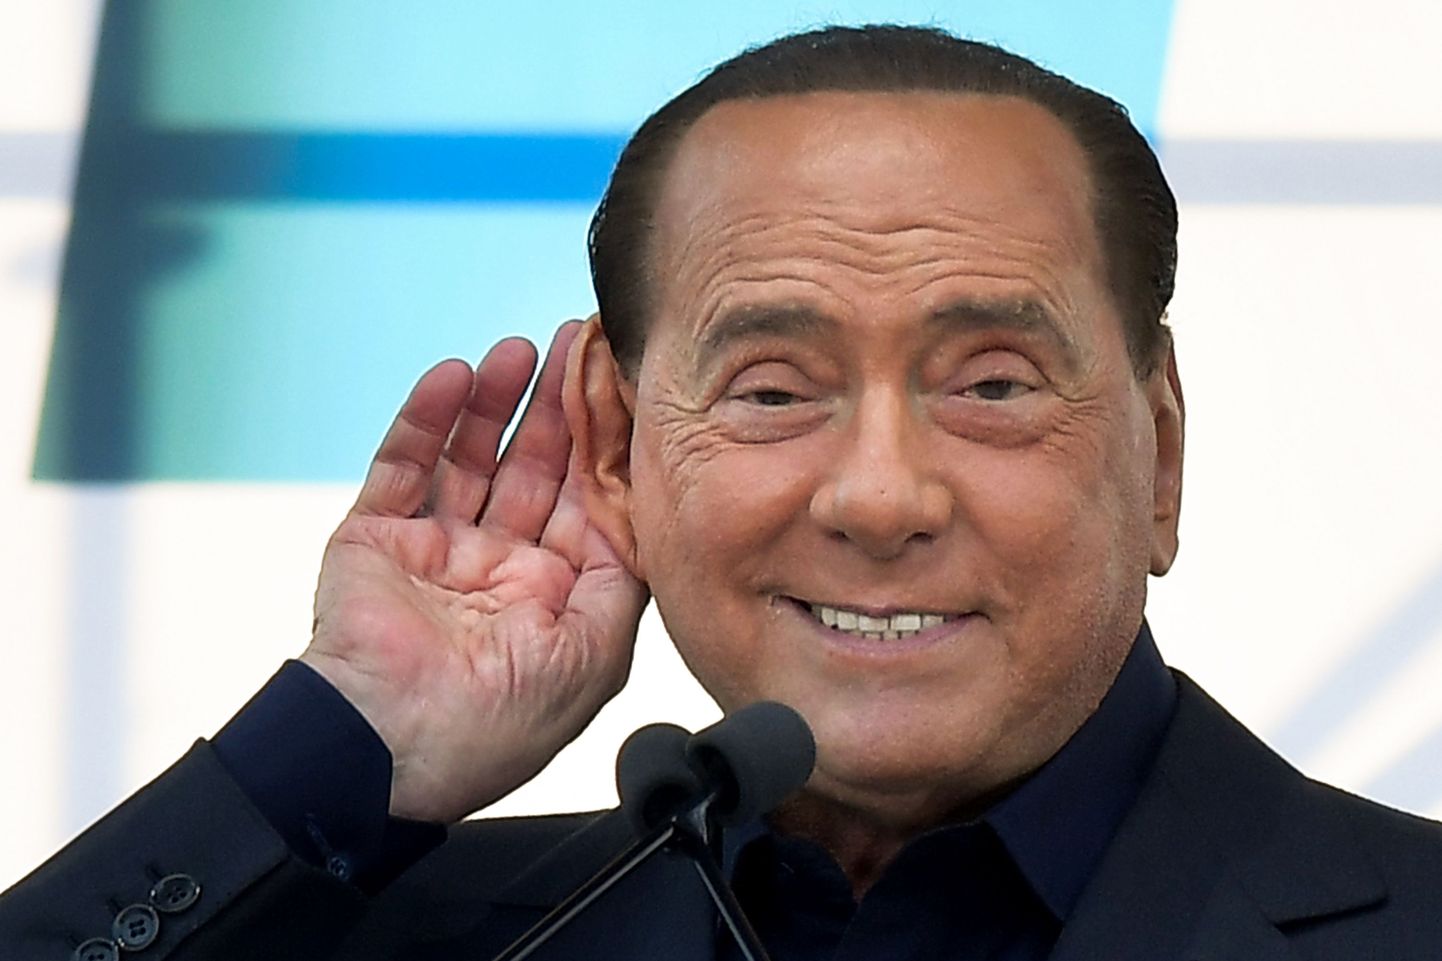 Itaalia liberaal-konservatiivse partei Forza Italia juht Silvio Berlusconi 19. oktoobril 2019 Roomas.